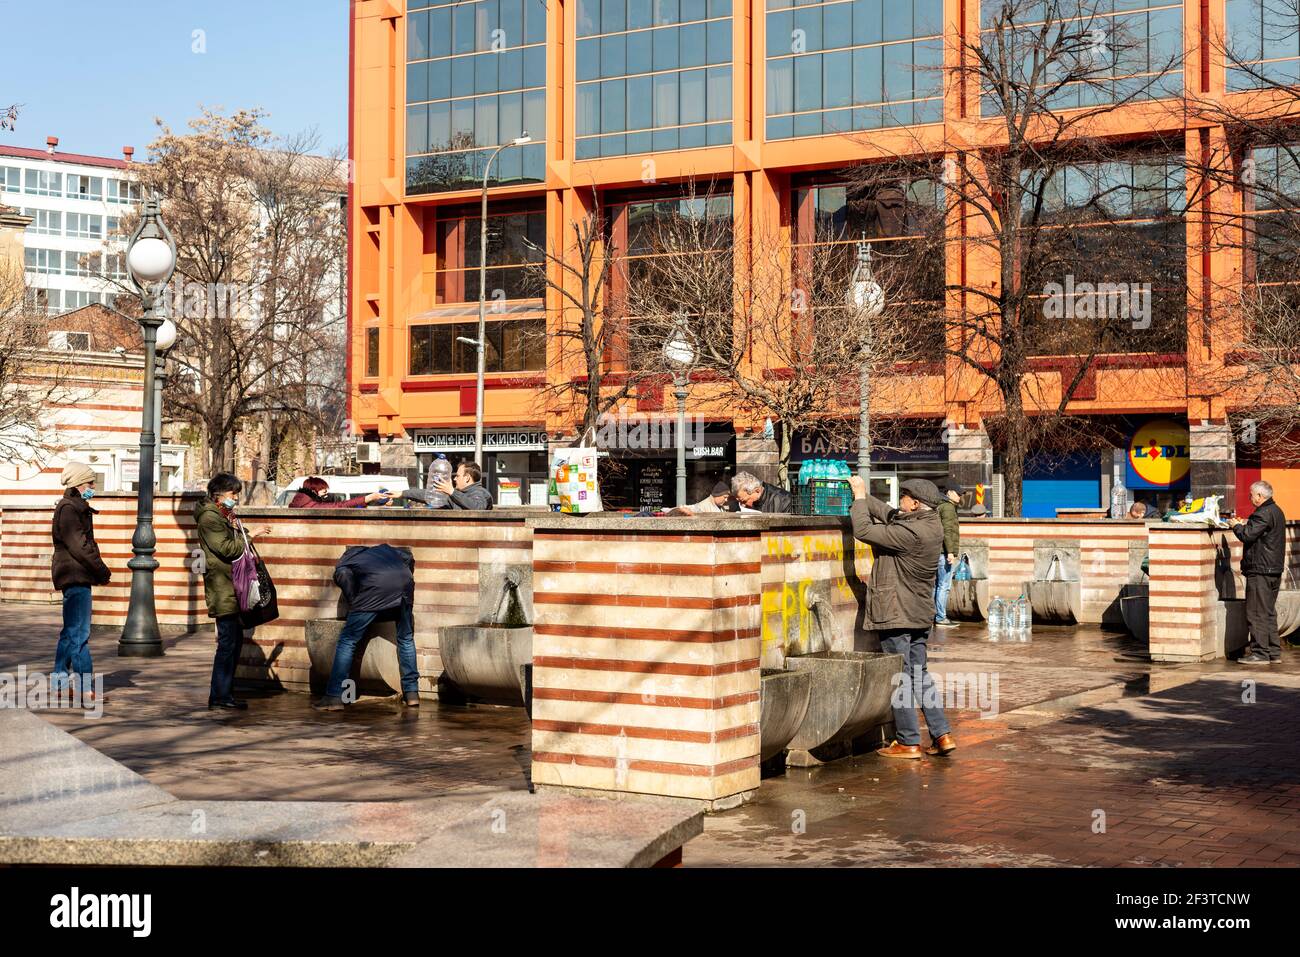 Public source de puits d'eau minérale personnes remplissant des bouteilles au puits d'eau de source des bains de minéraux centraux dans le centre de Sofia, Bulgarie, Europe de l'est, UE Banque D'Images